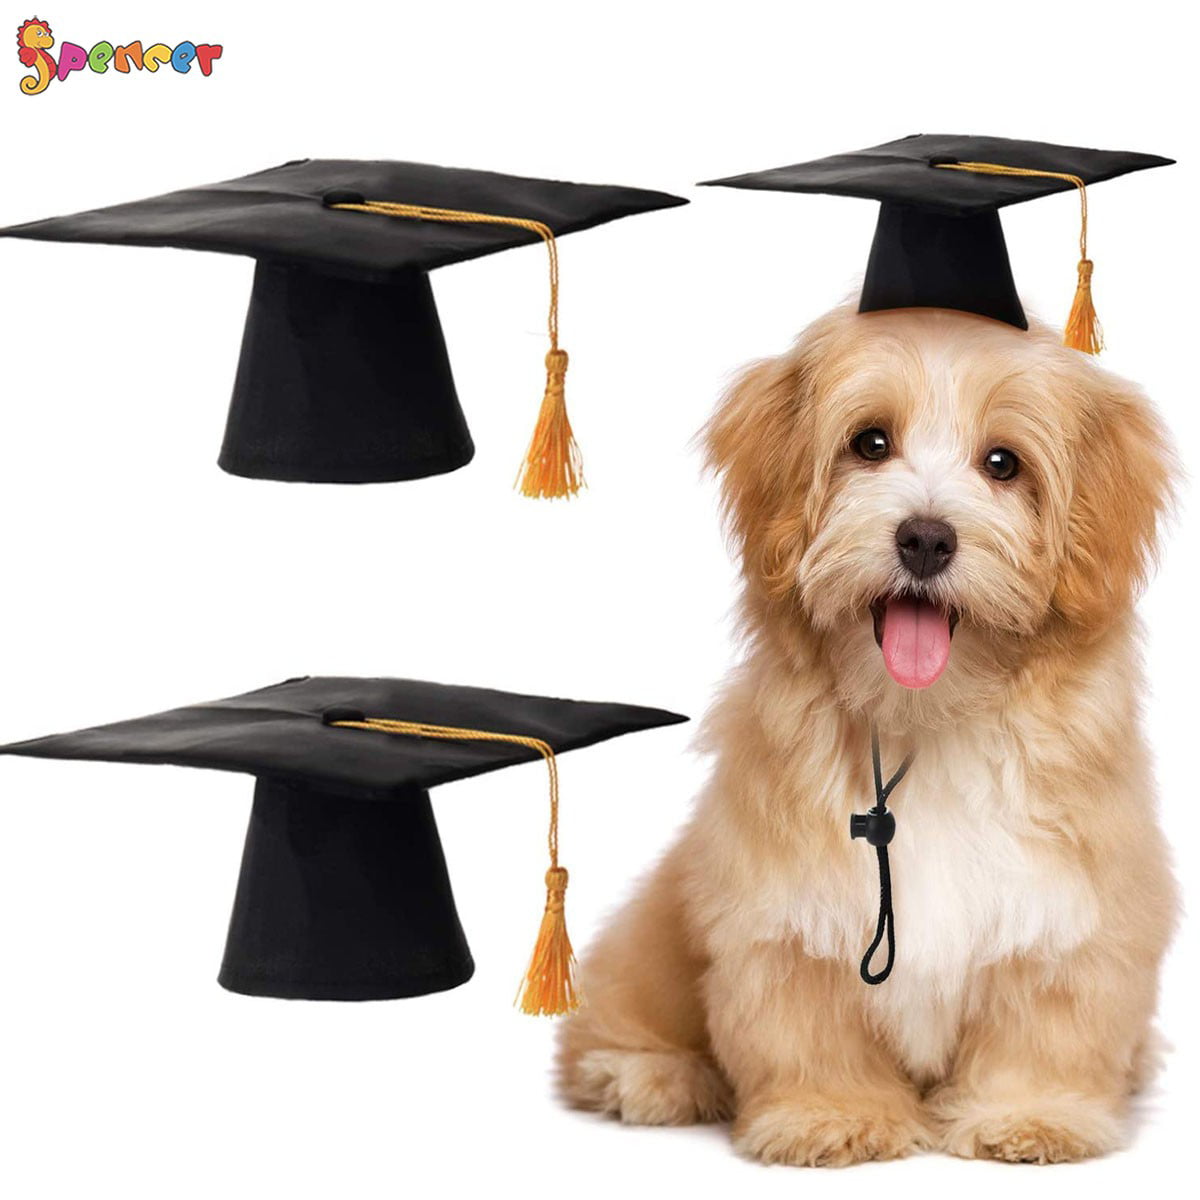 Dog and Cat Graduation Cap